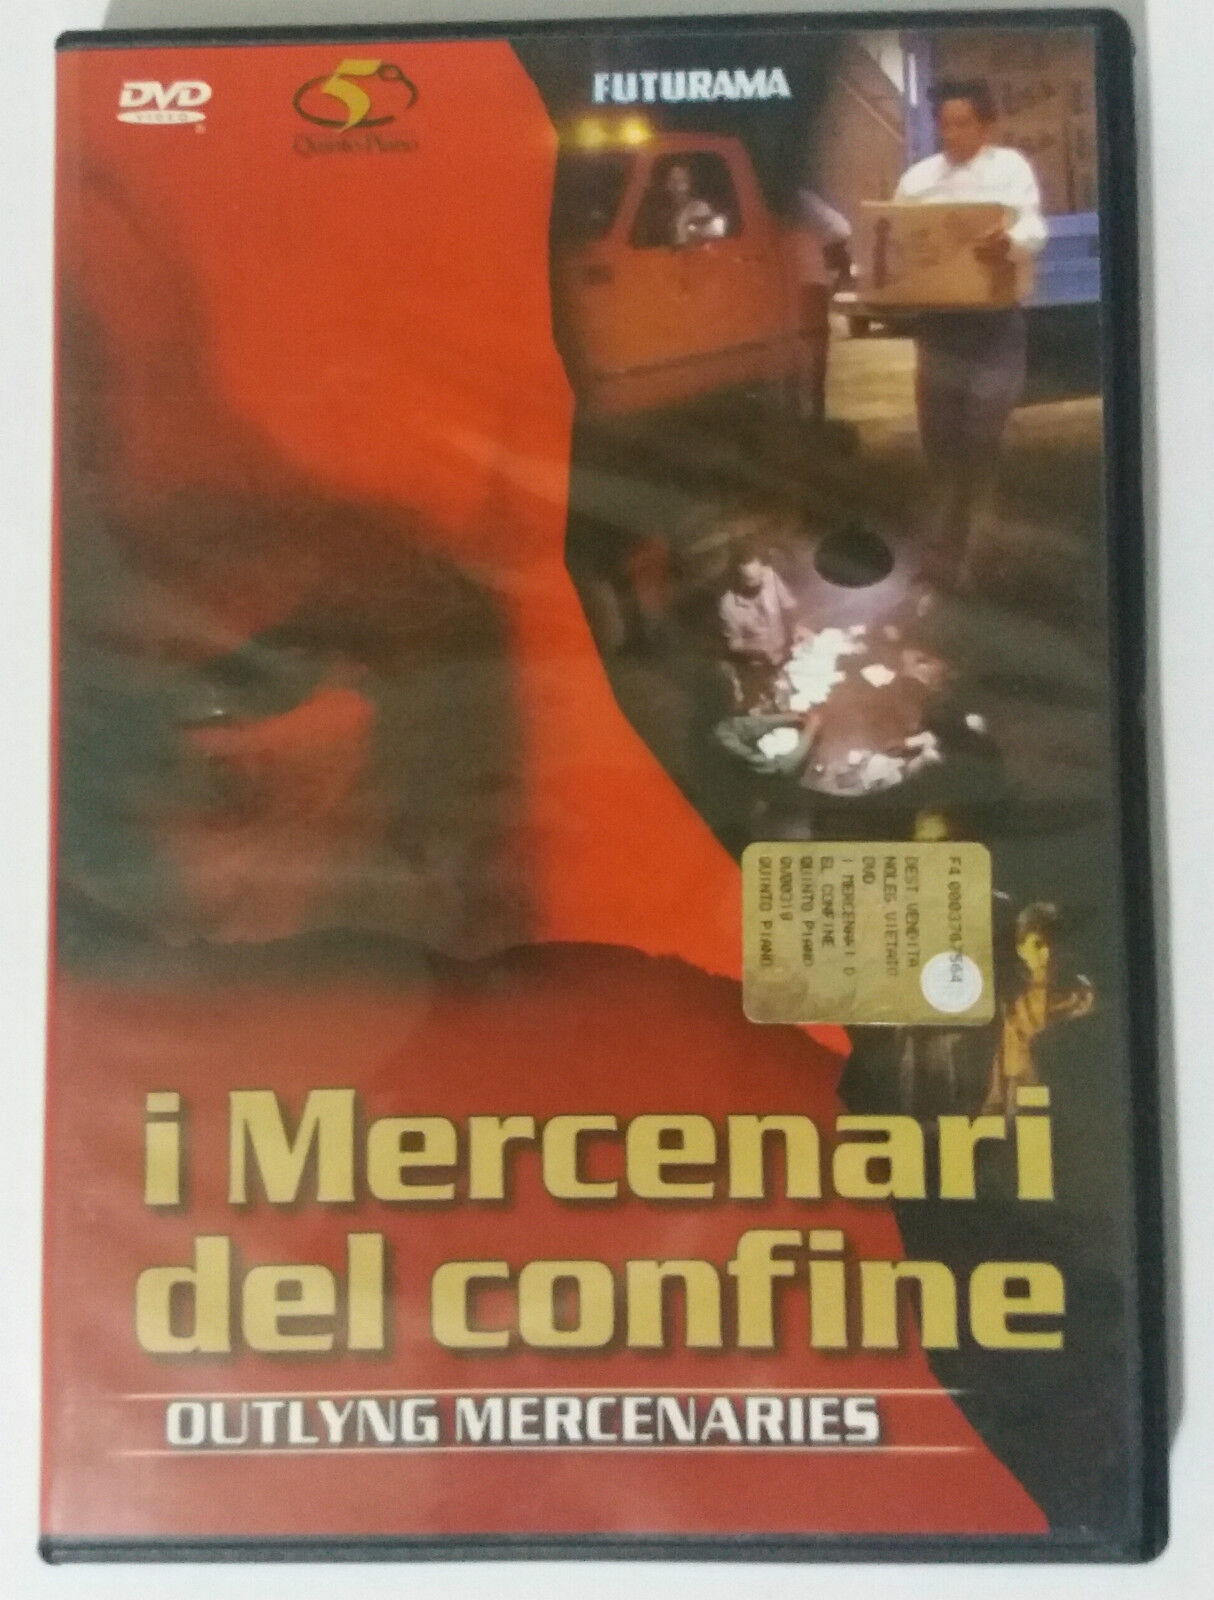 I mercenari del confine - Al Garrison - Quinto Piano - 1984 - DVD - G dvd usato